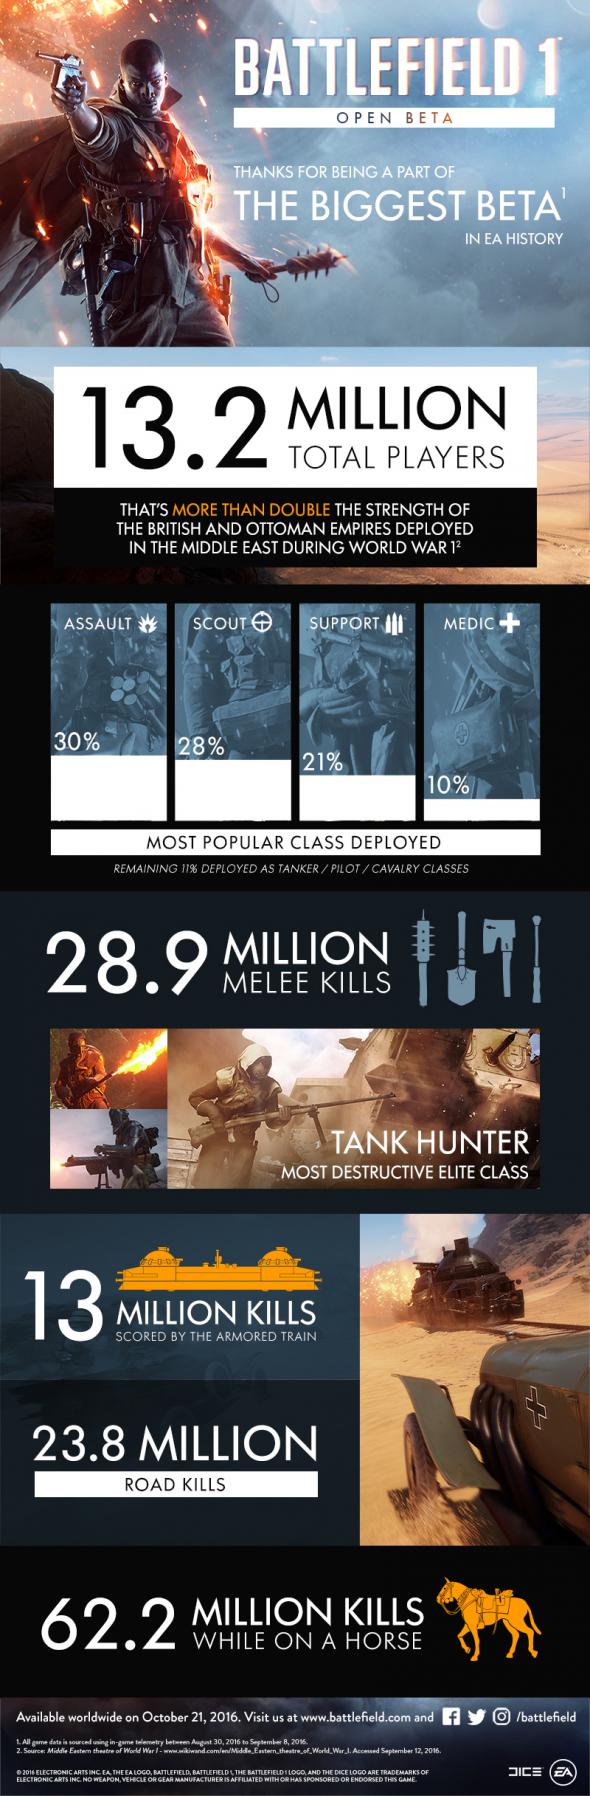 battlefield-1-info-graphic.jpg